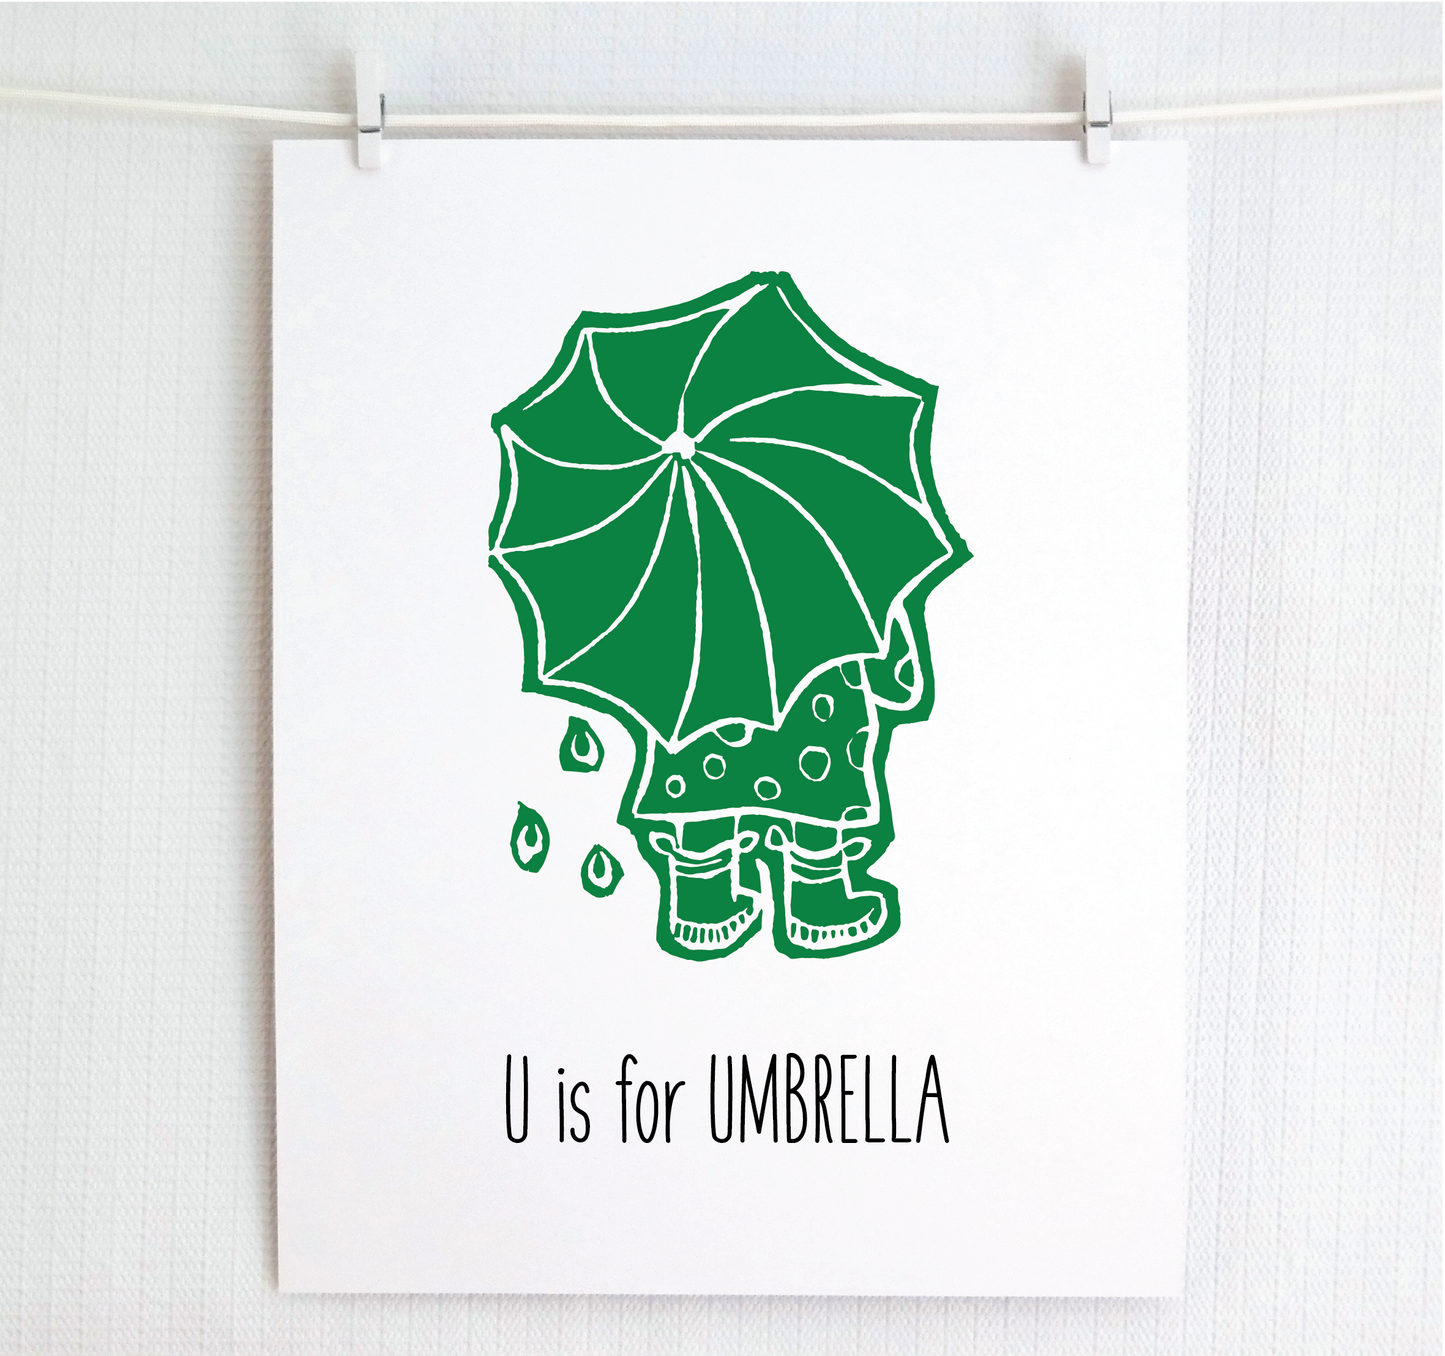 U is for Umbrella